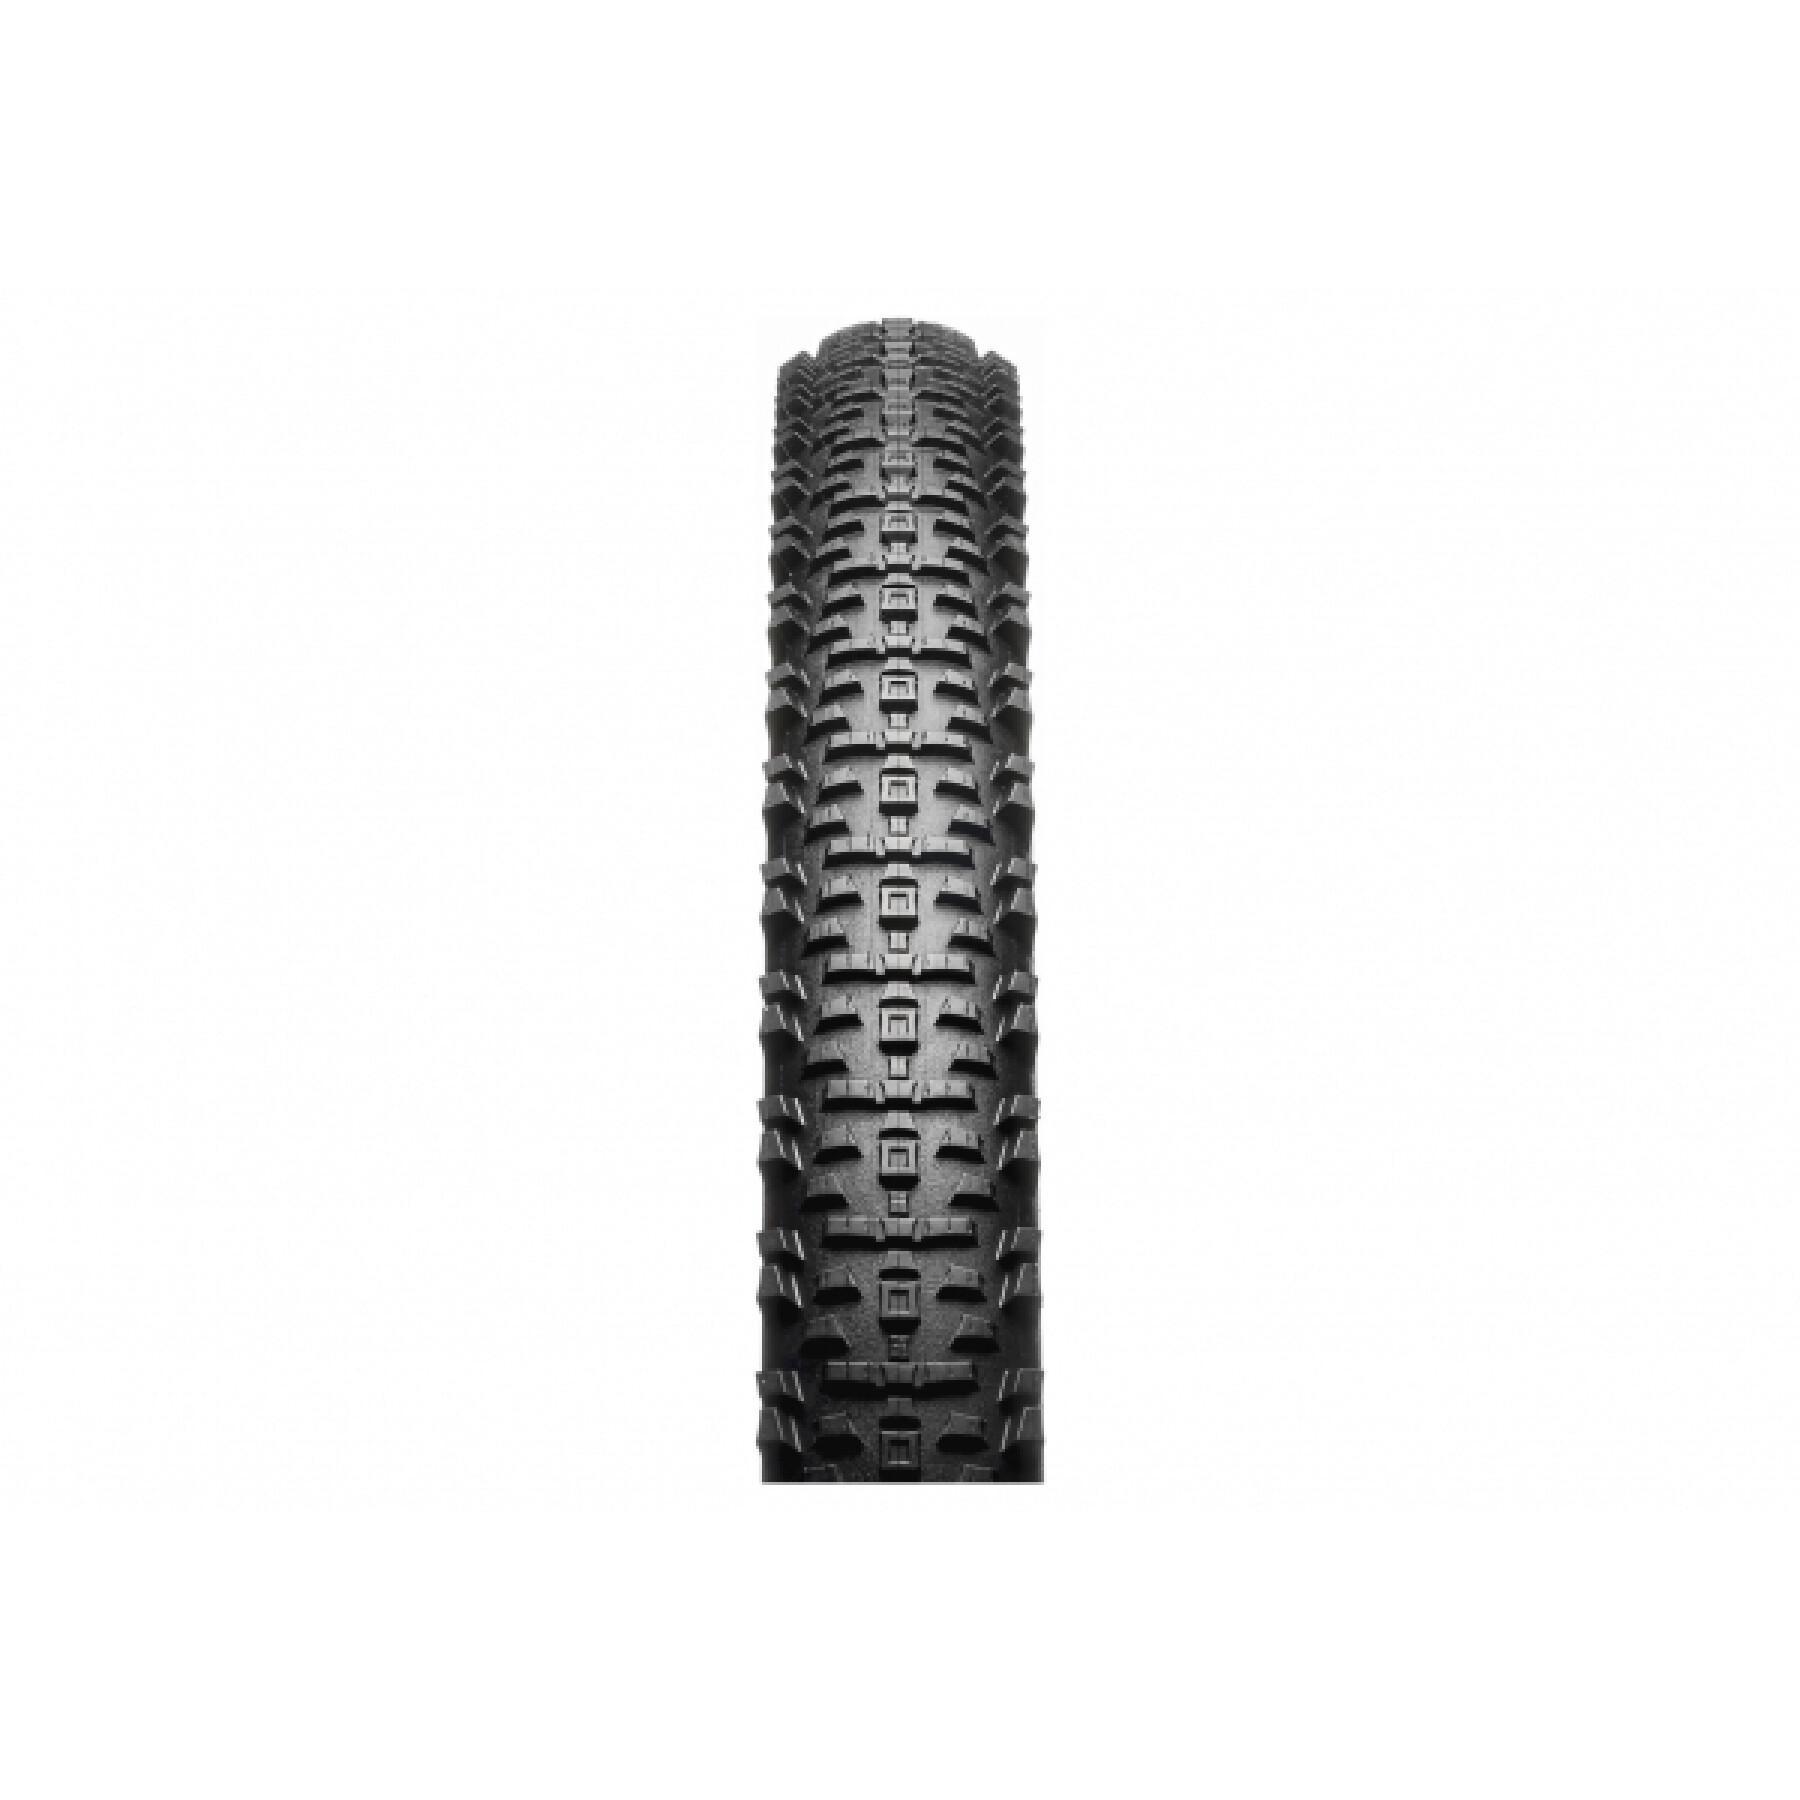 Neumático rígido de bicicleta de montaña Hutchinson Kraken Gumvall Mono-Compound 55-622